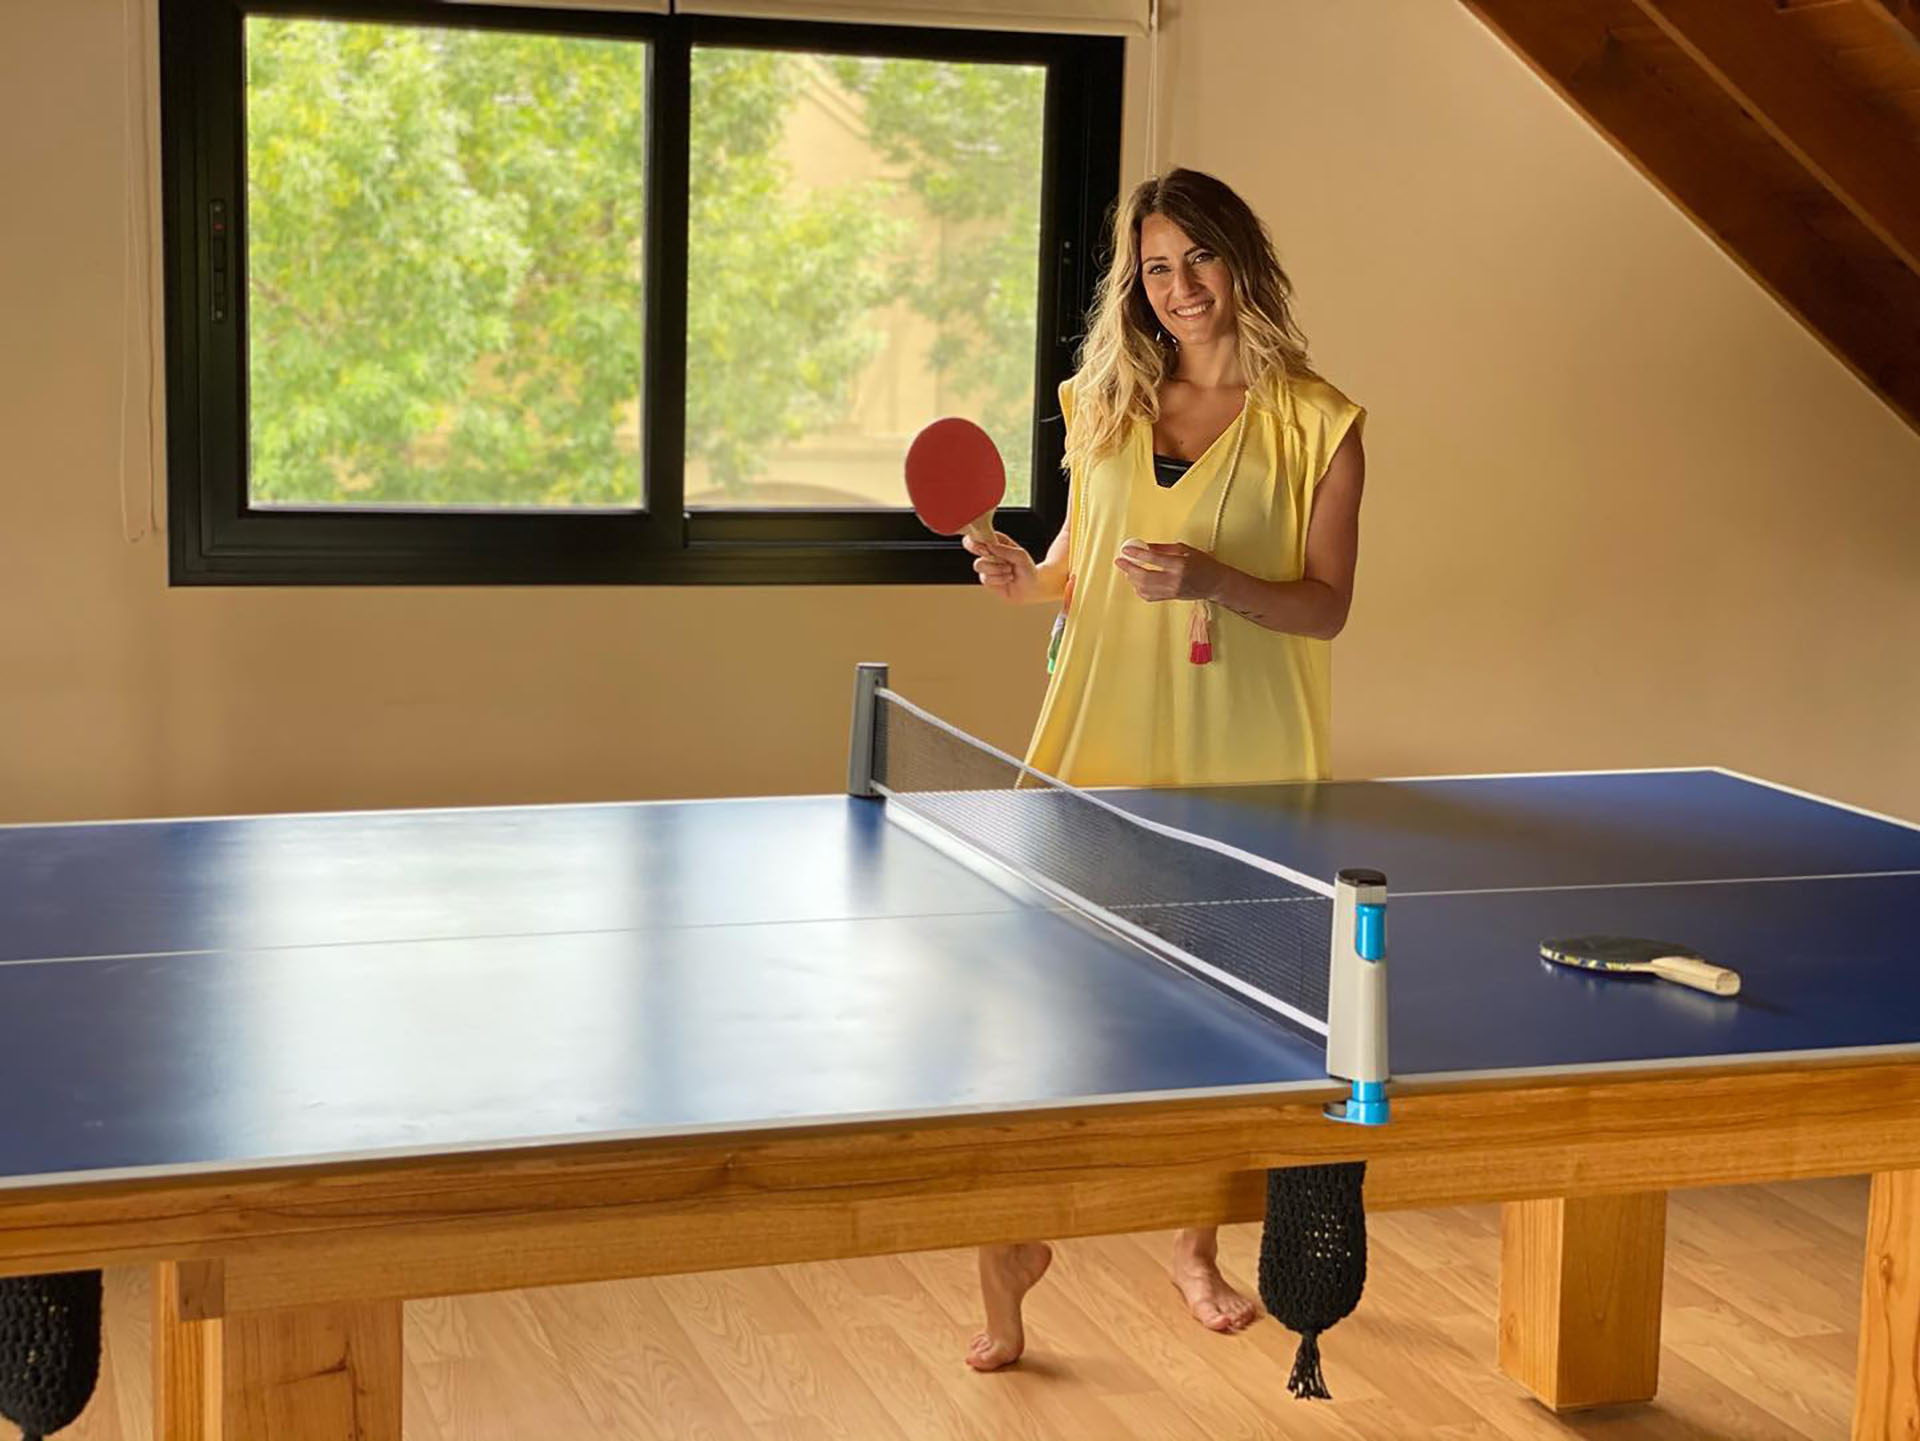 La mesa de pool también se transforma en una de ping pong (@micaviciconte)